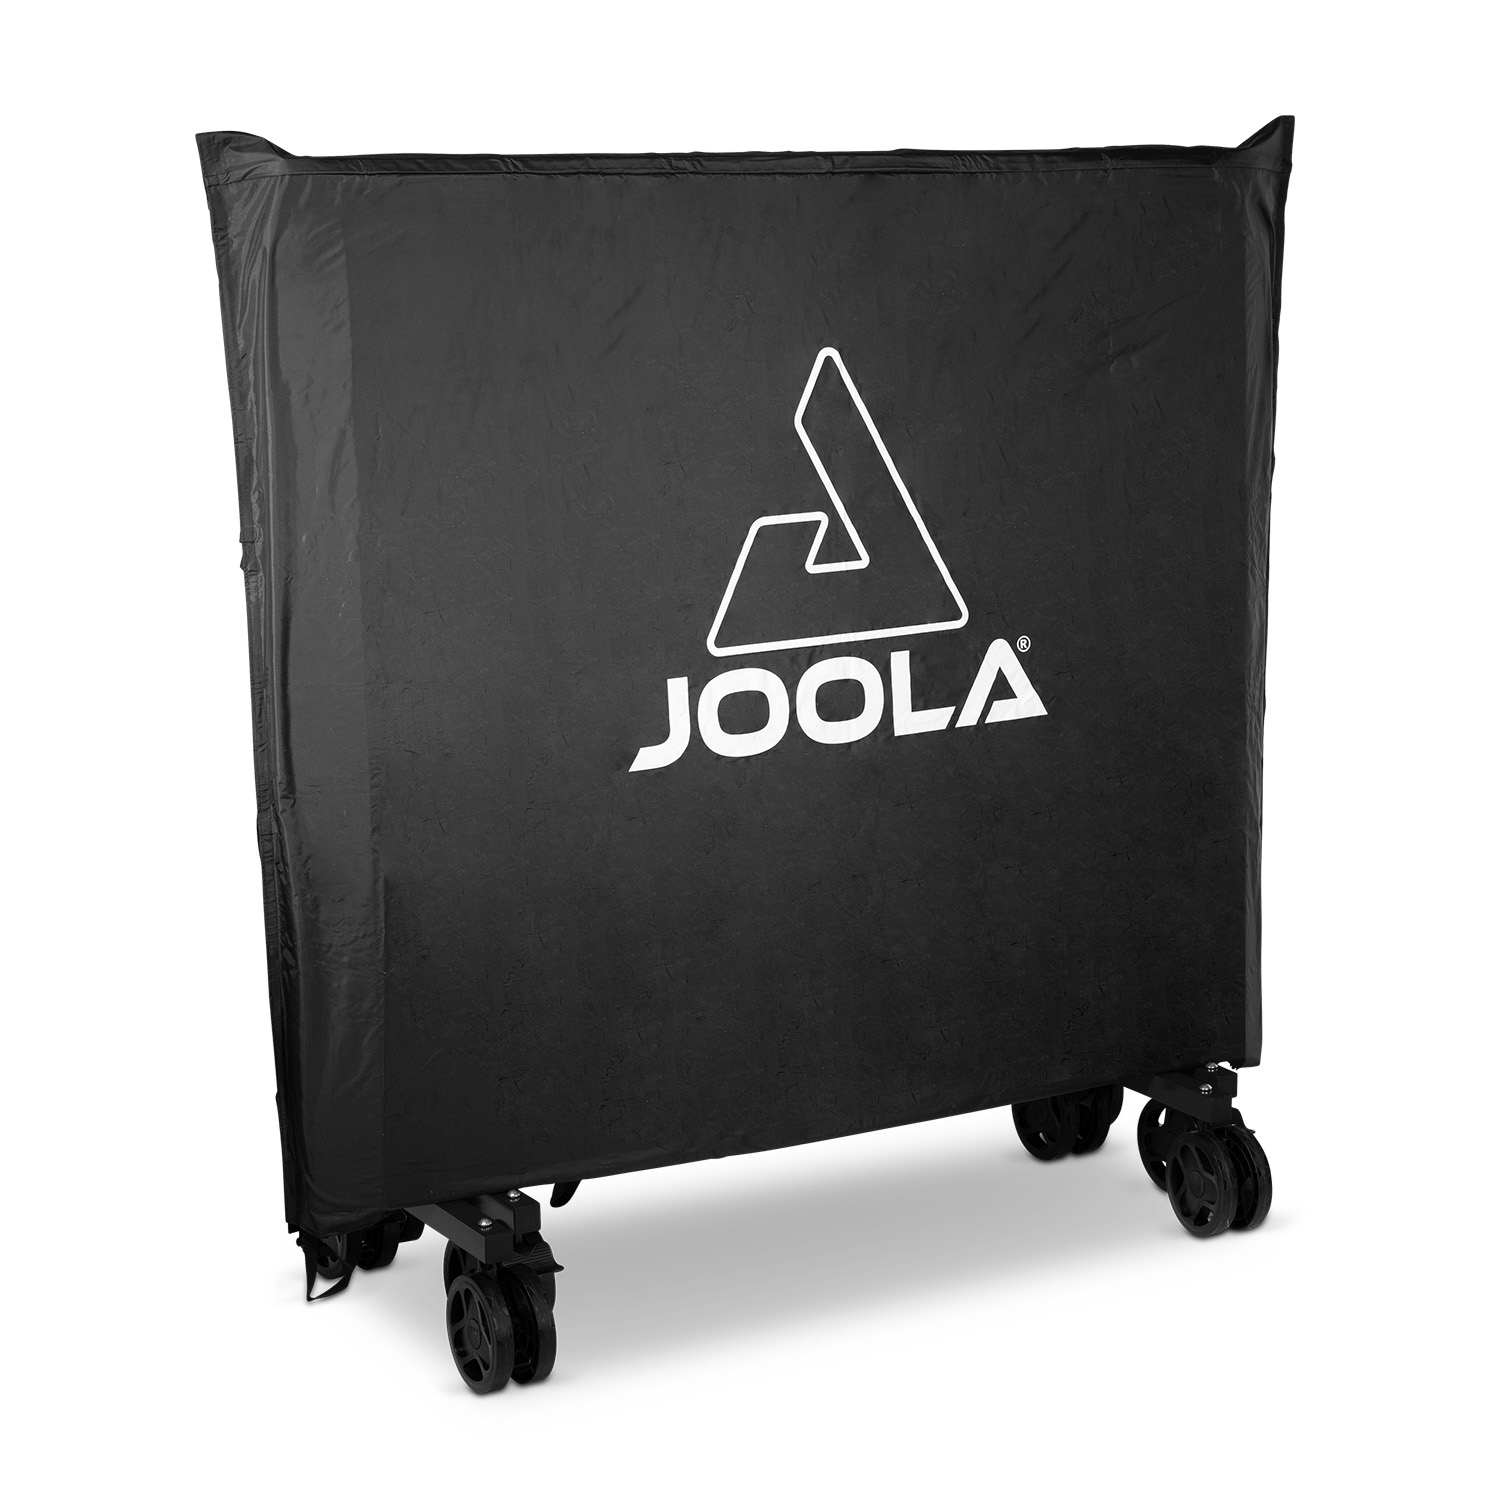 JOOLA Tischtennis Tischabdeckung | JOOLA Tischtennis GmbH